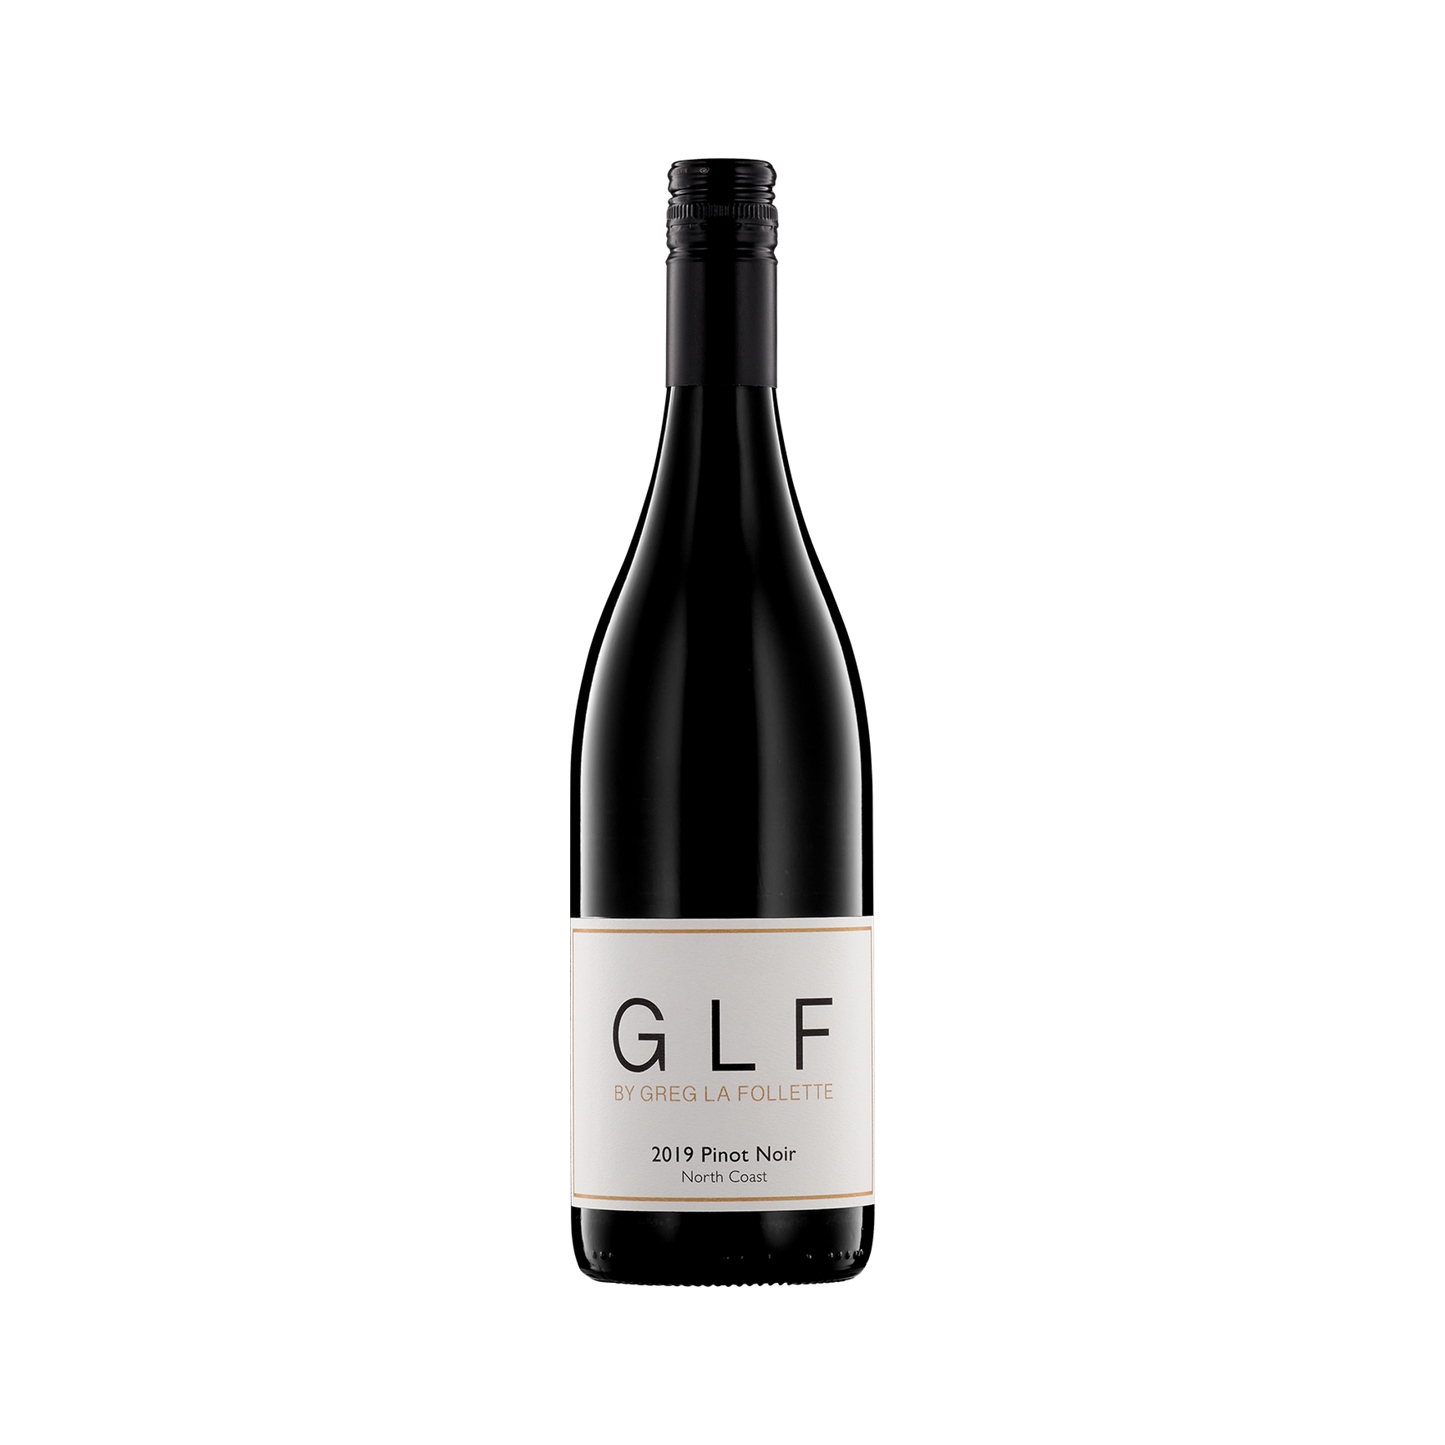 A bottle of GLF Wines by Greg La Follette 2019 Pinot Noir